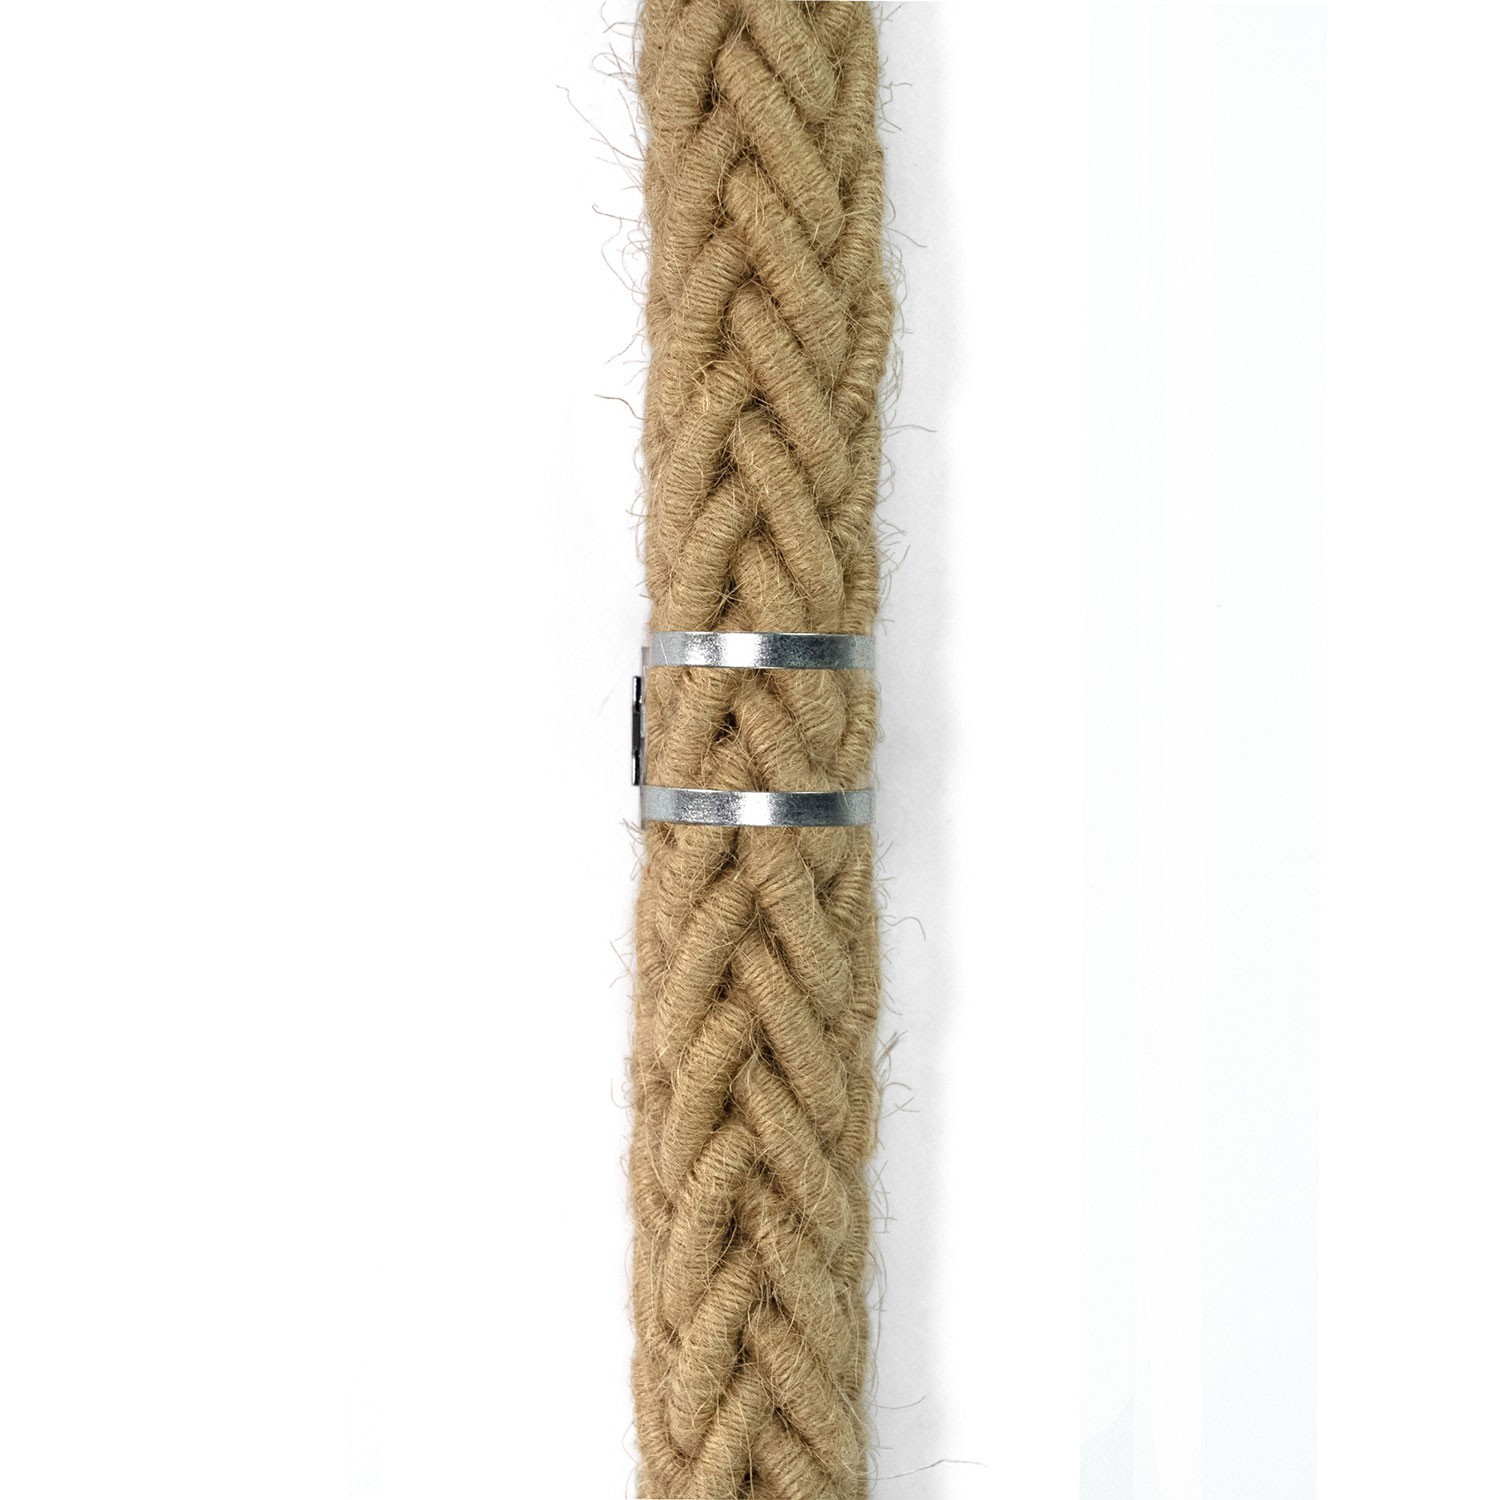 Snake Bis-bedrading met houten fitting, metalen eindklem en 2XL jute touw